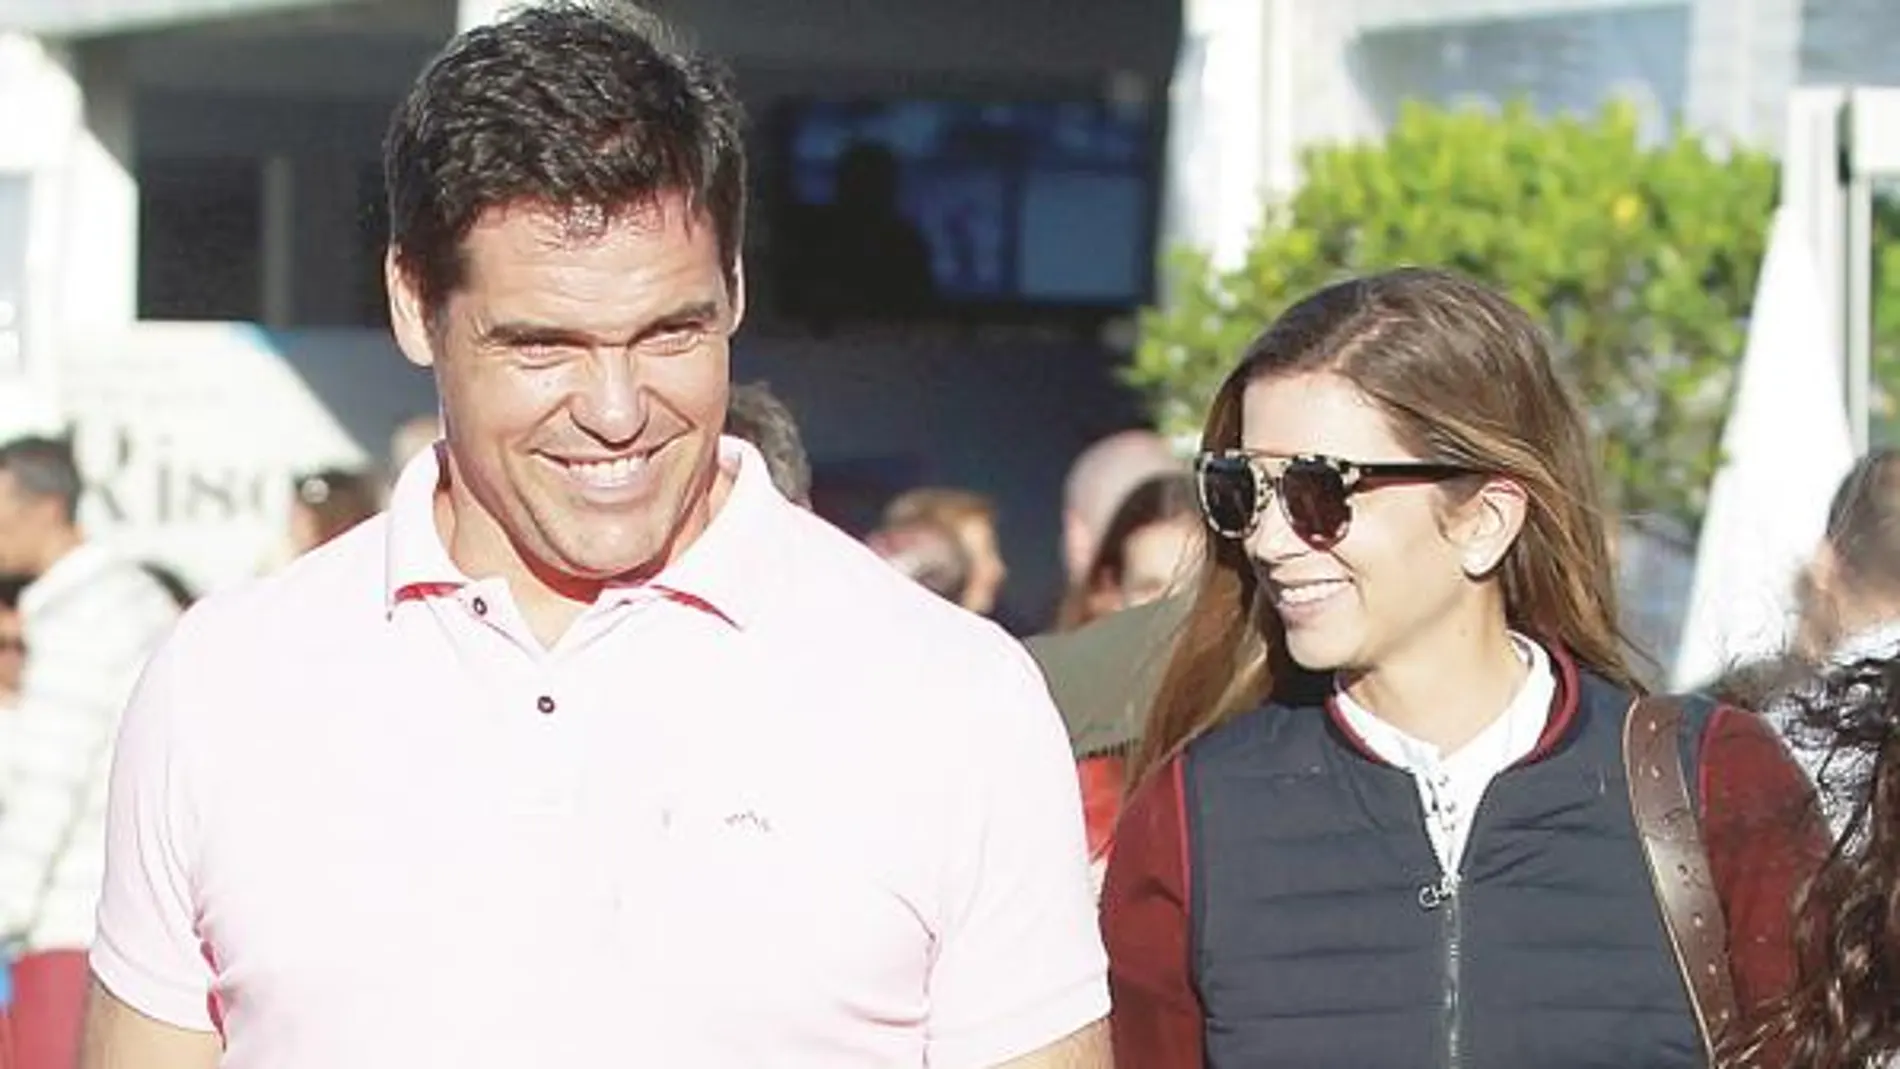 Luis Alfonso de Borbón y Margarita Vargas se casaron en 2004 y fruto de su matrimonio tienen tres hijos